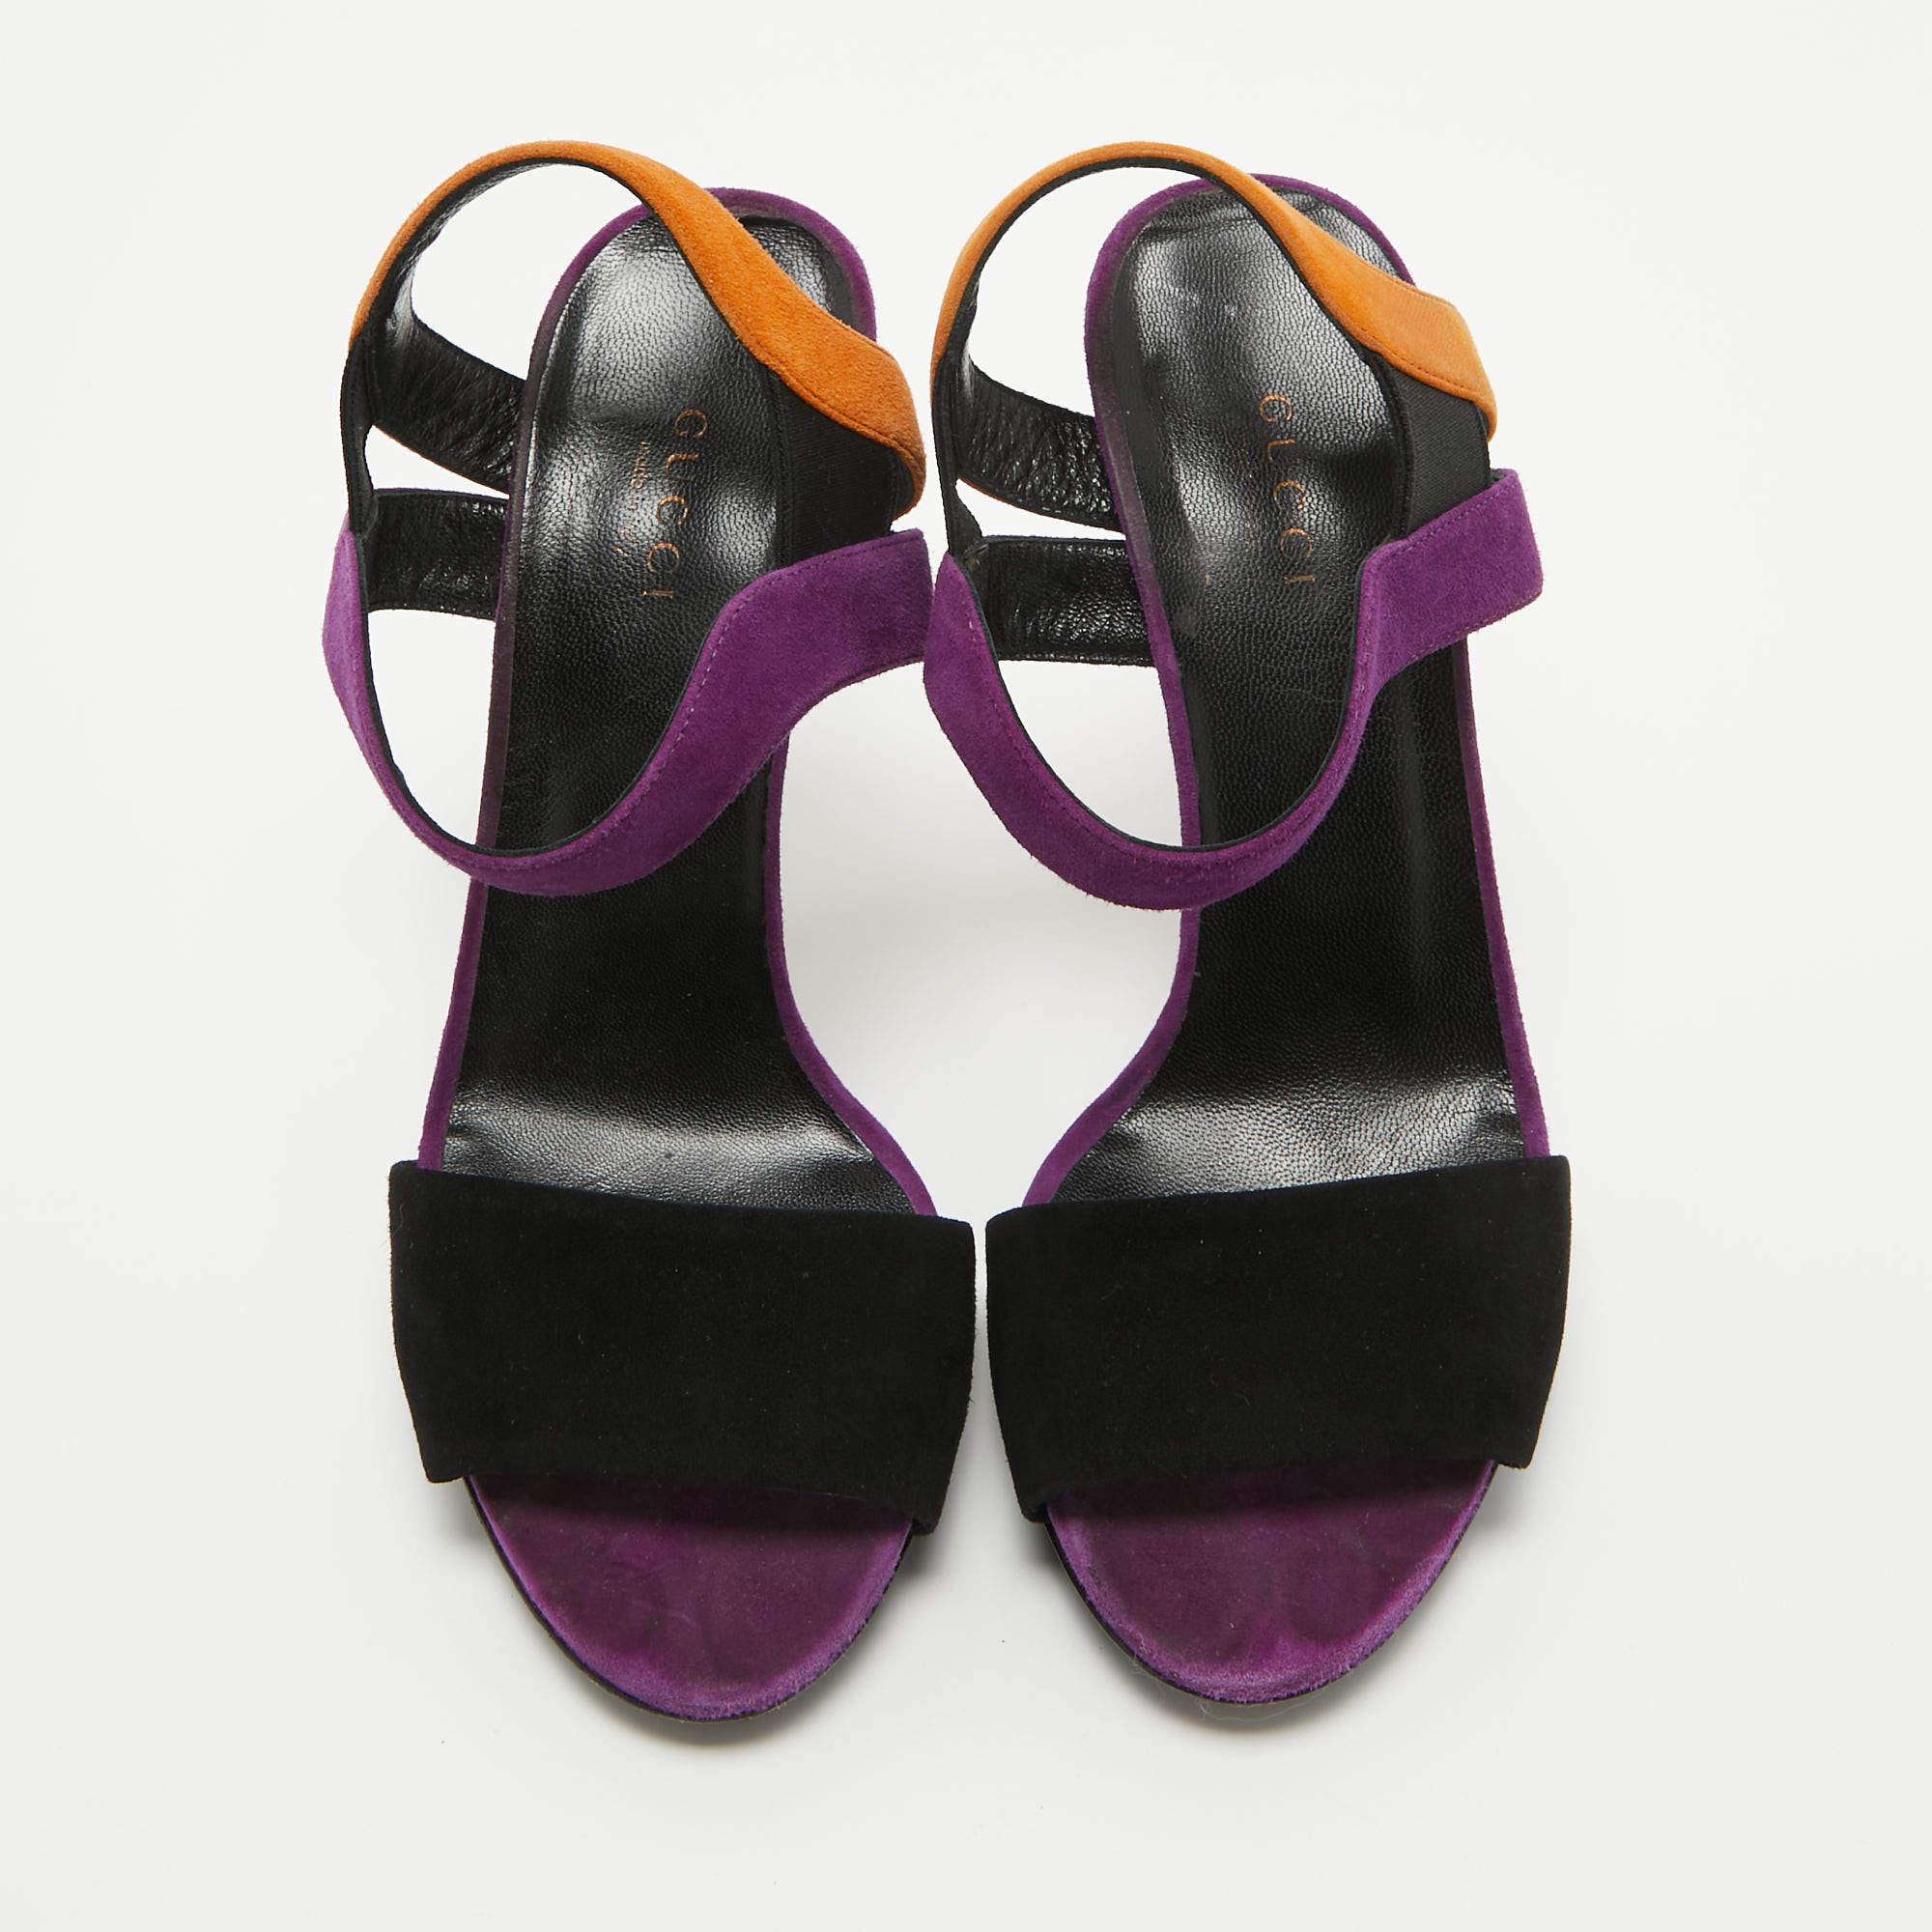 Diese Sandalen von Gucci sind dazu bestimmt, eine beliebte Wahl zu sein. Wunderschön gearbeitet und auf schlanken Absätzen balanciert, heben die Schuhe Ihre Füße in einer atemberaubenden Silhouette.

